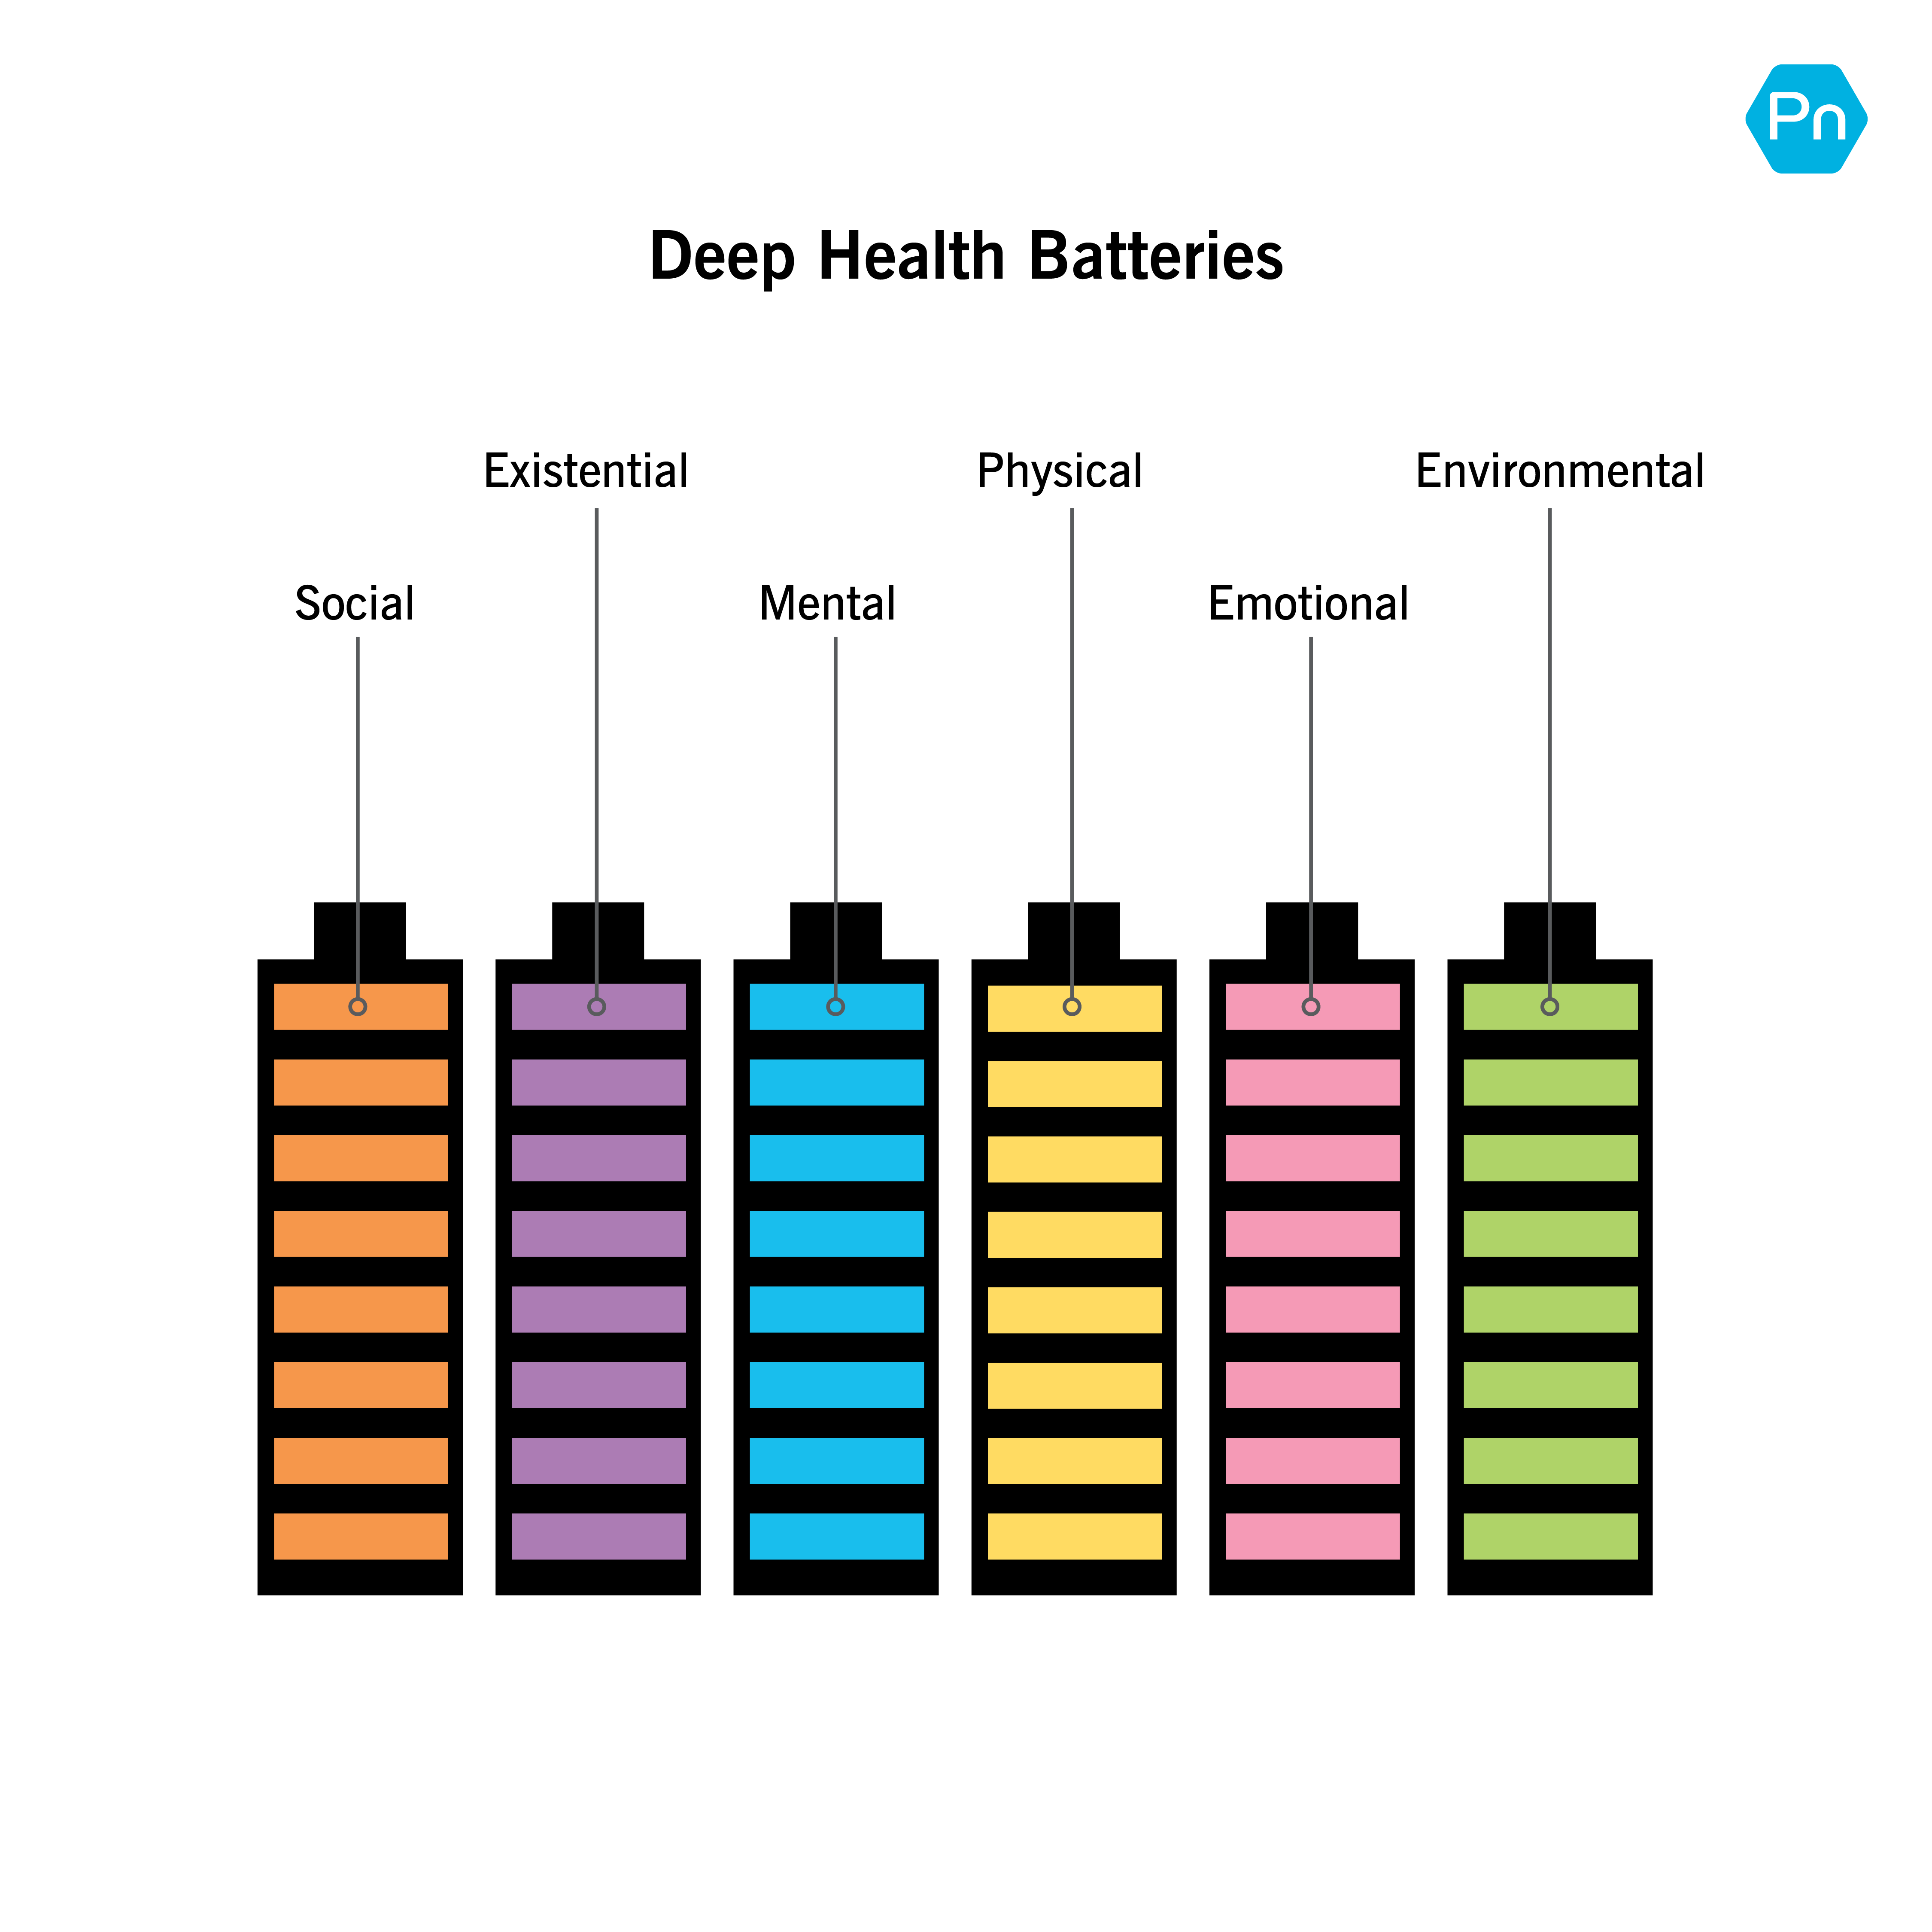 以电池显示的六个深度健康维度的图形描述:社会、存在、精神、身体、情感和环境